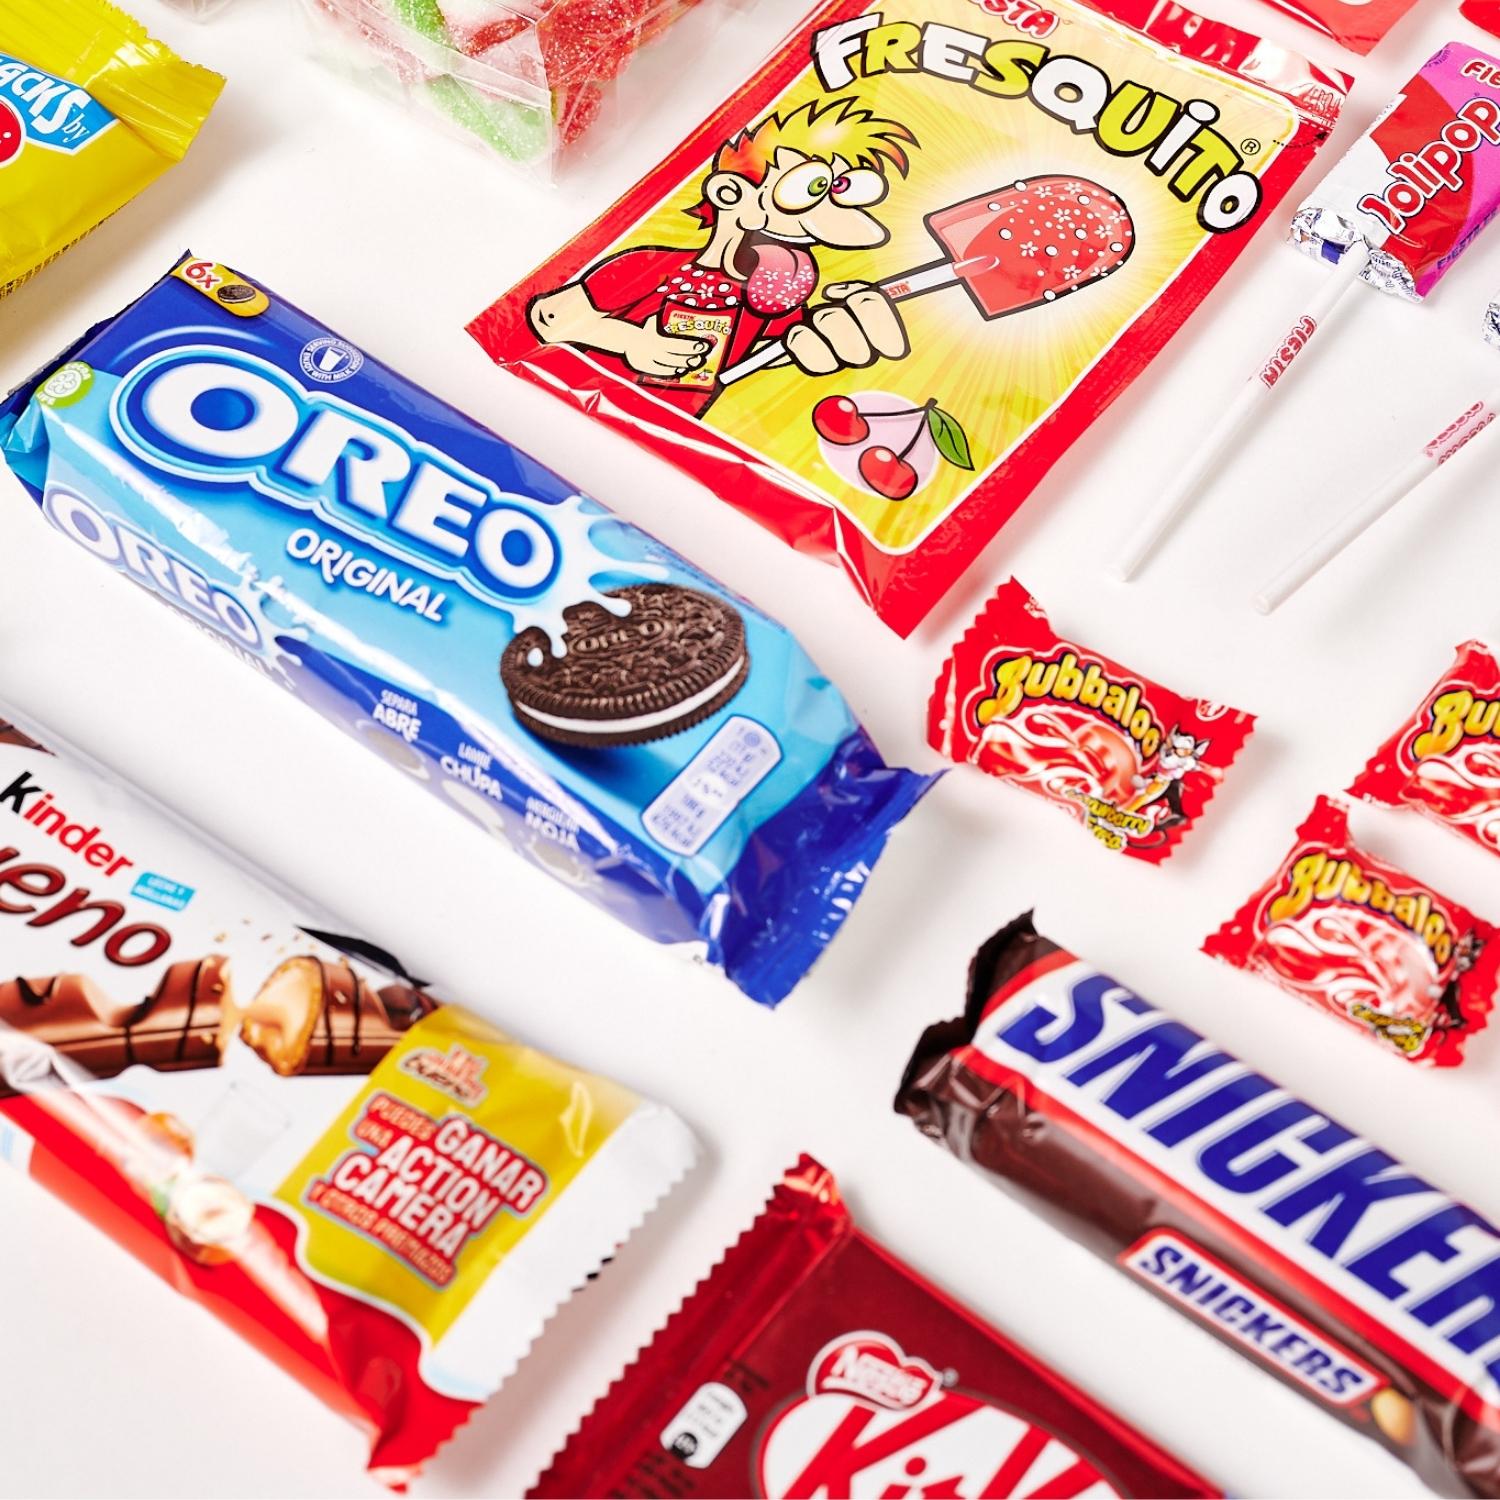 Candydubi  Cajas de Regalo Originales: Chuches, Snacks y Chocolates